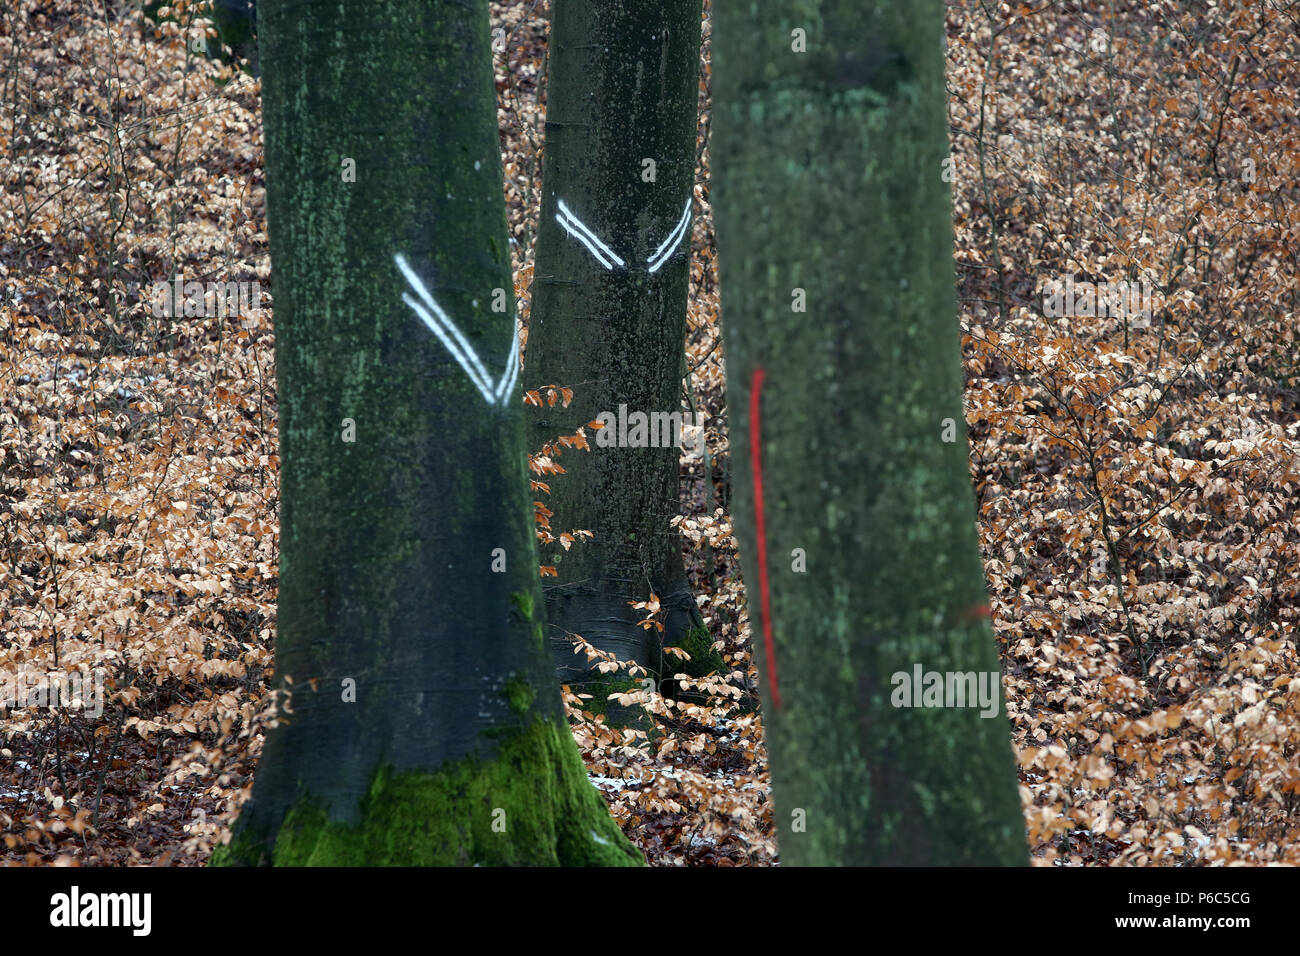 Nouveau Kaetwin, Allemagne - marques sur le tronc des arbres dans la forêt Banque D'Images